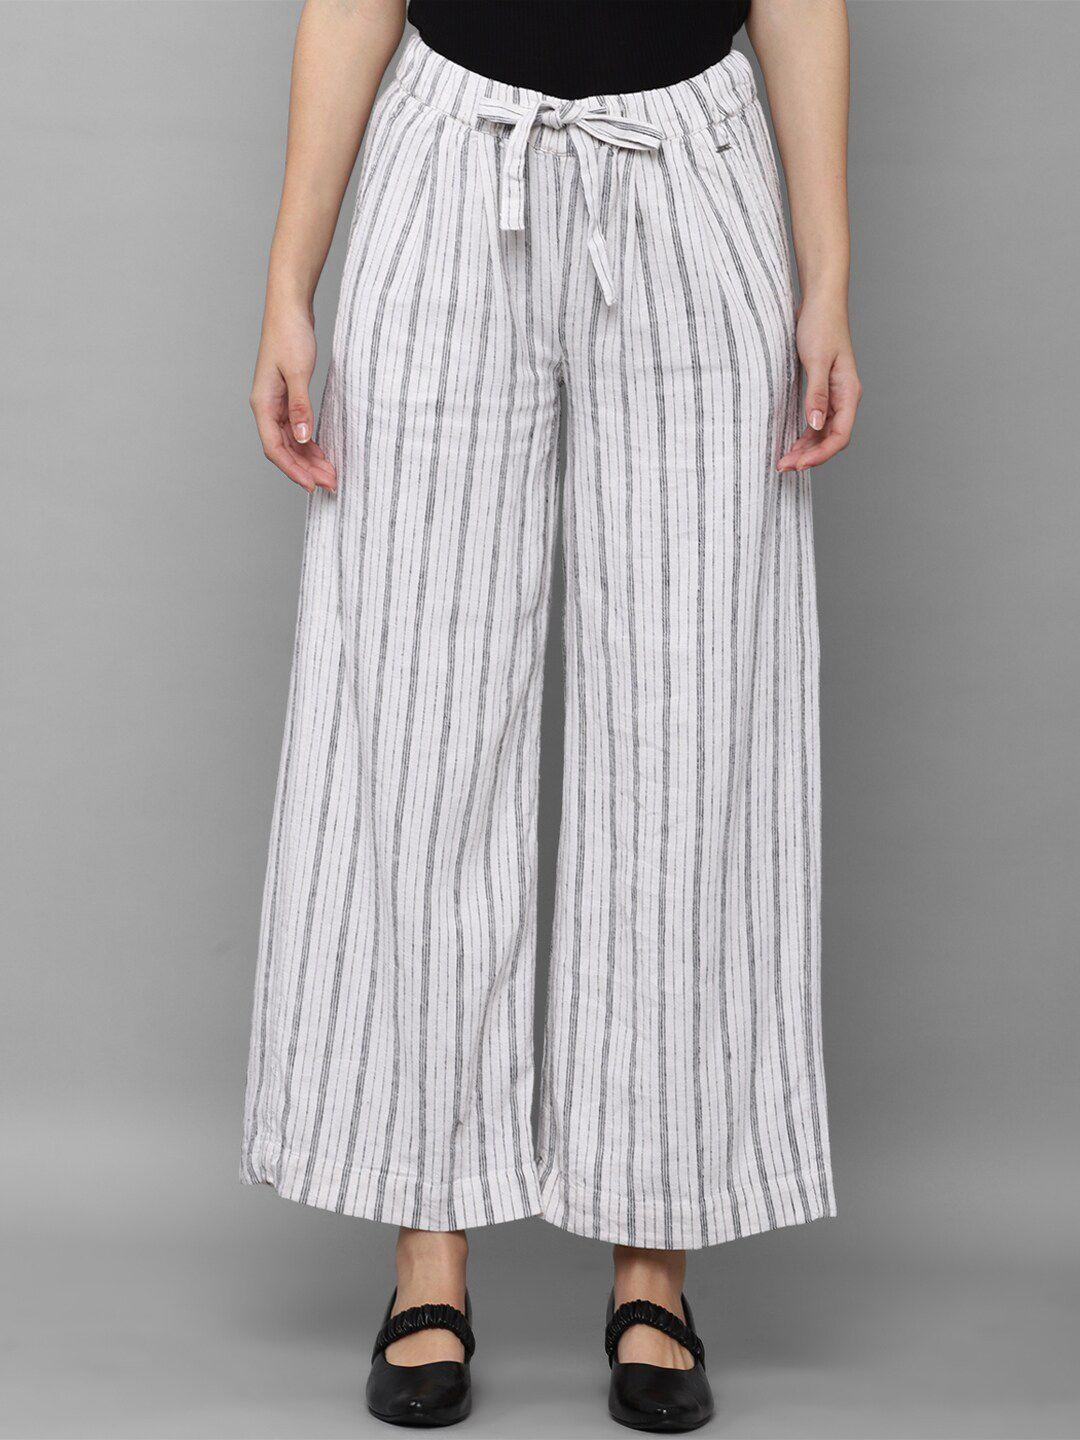 Allen Solly Woman Women Grey Striped Trousers